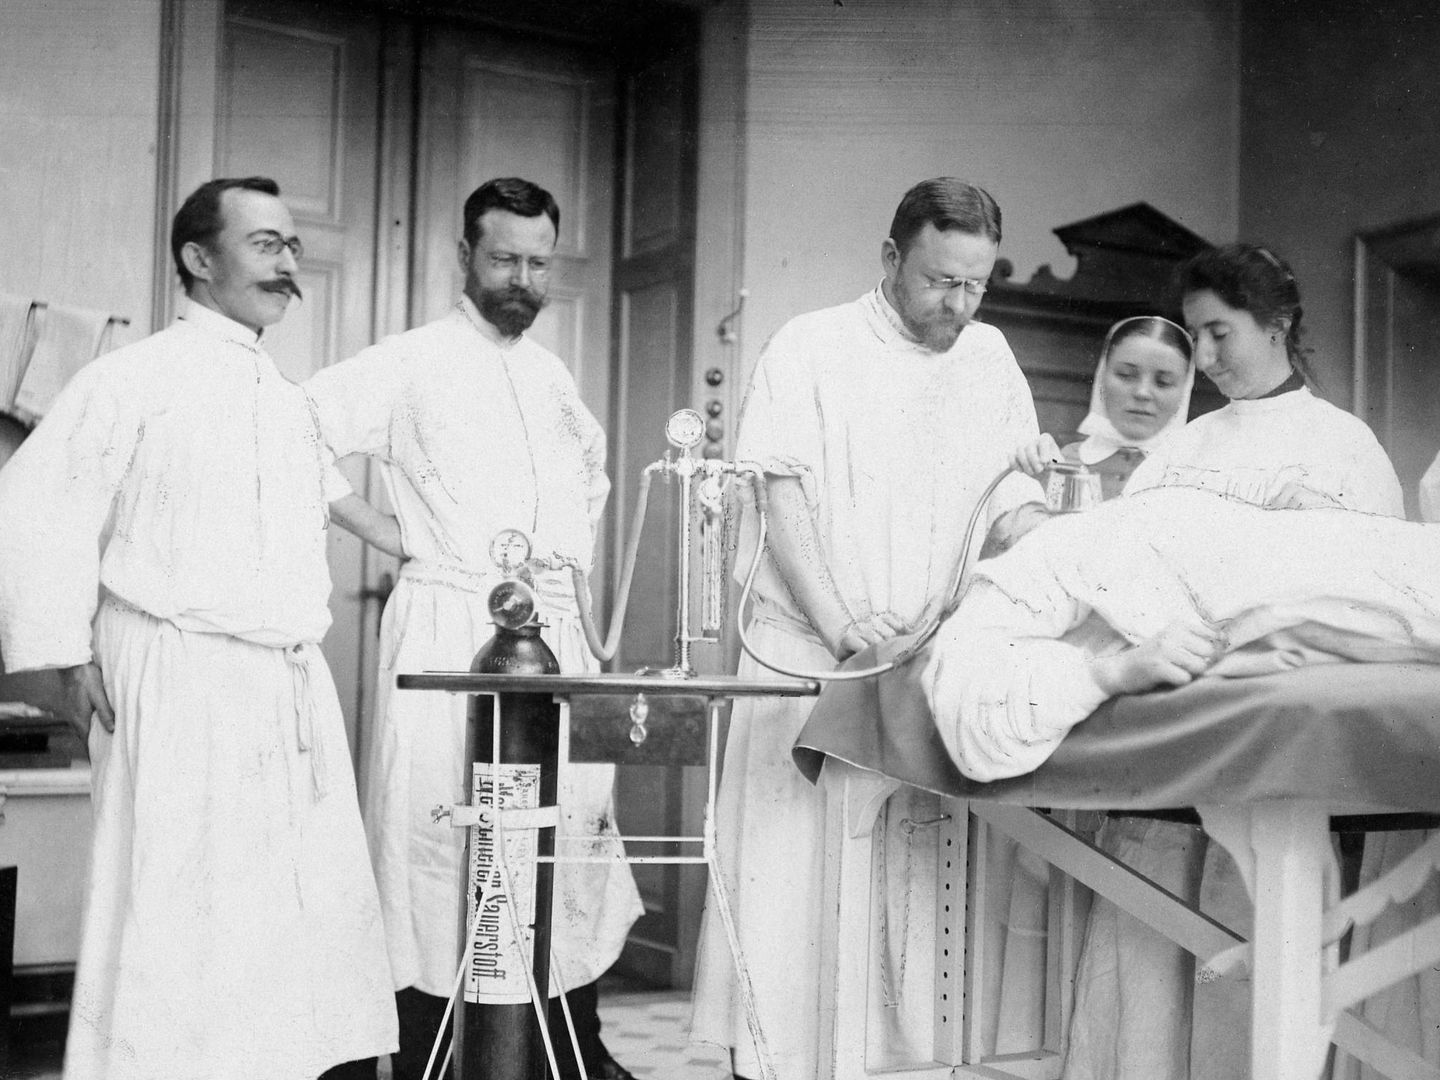 Roth Dräger, primer aparato de anestesia, en plena operación